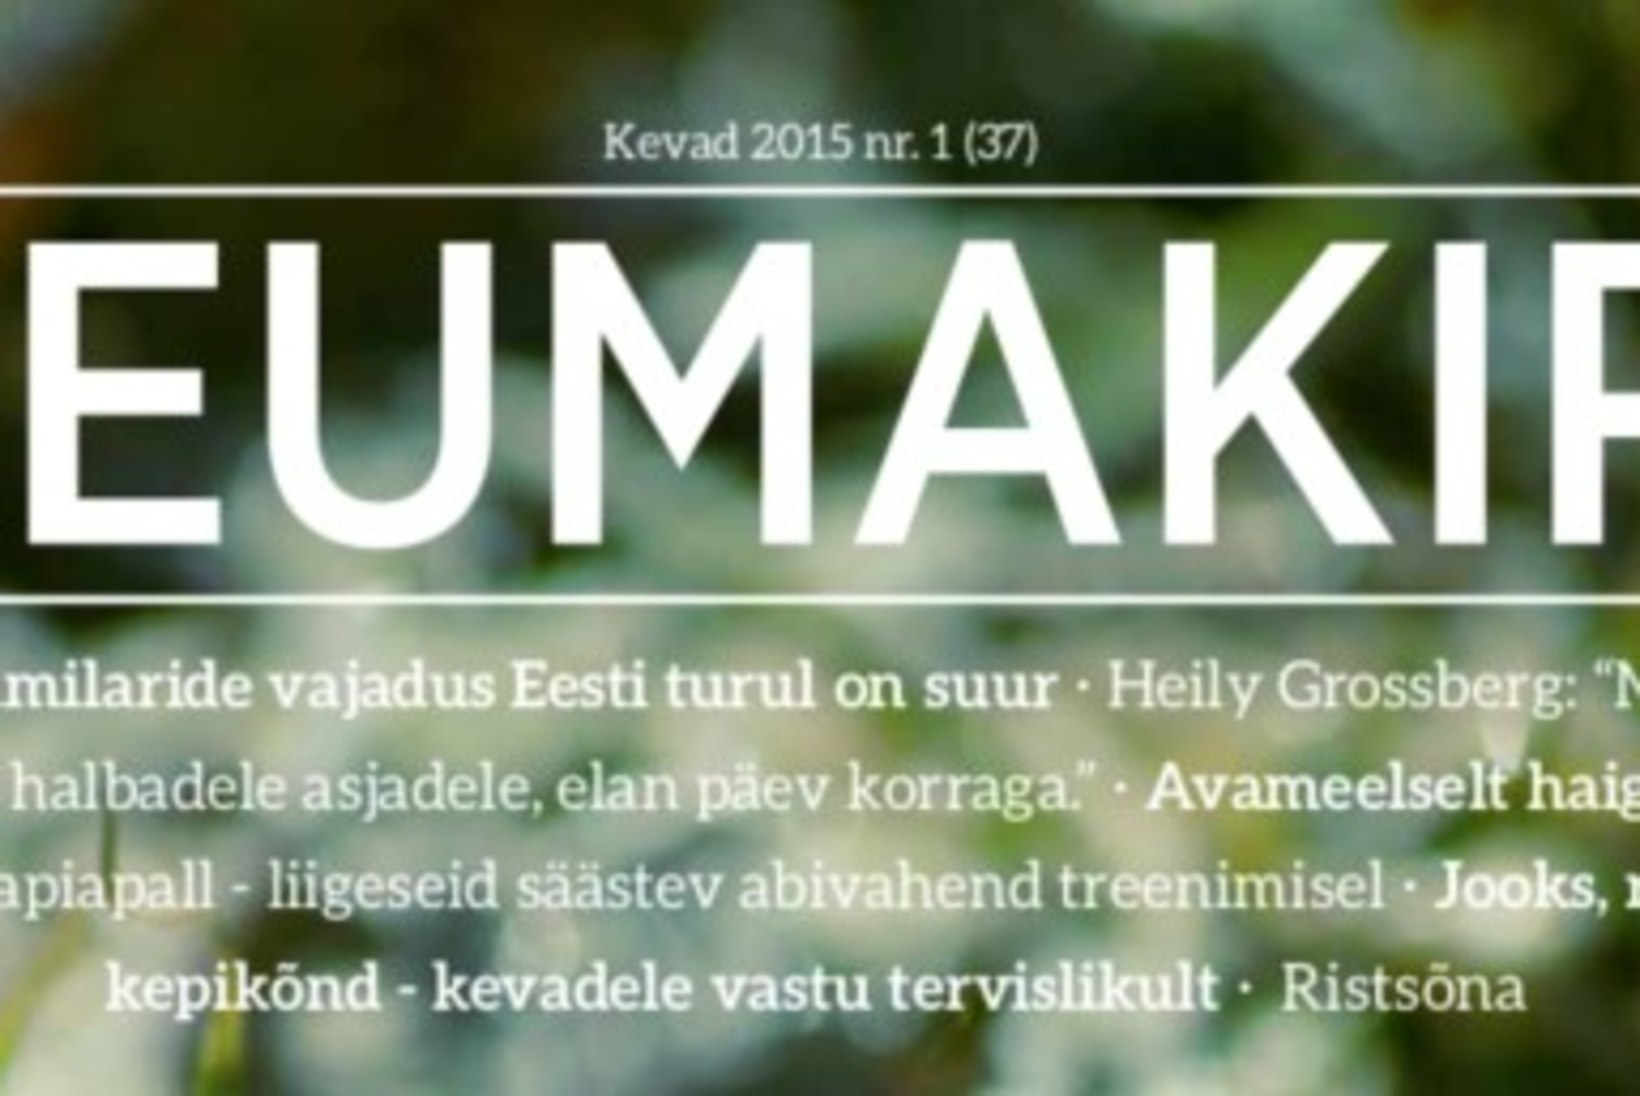 Eesti Reumaliidu väljaanne ReumaKiri lõpetab ilmumise